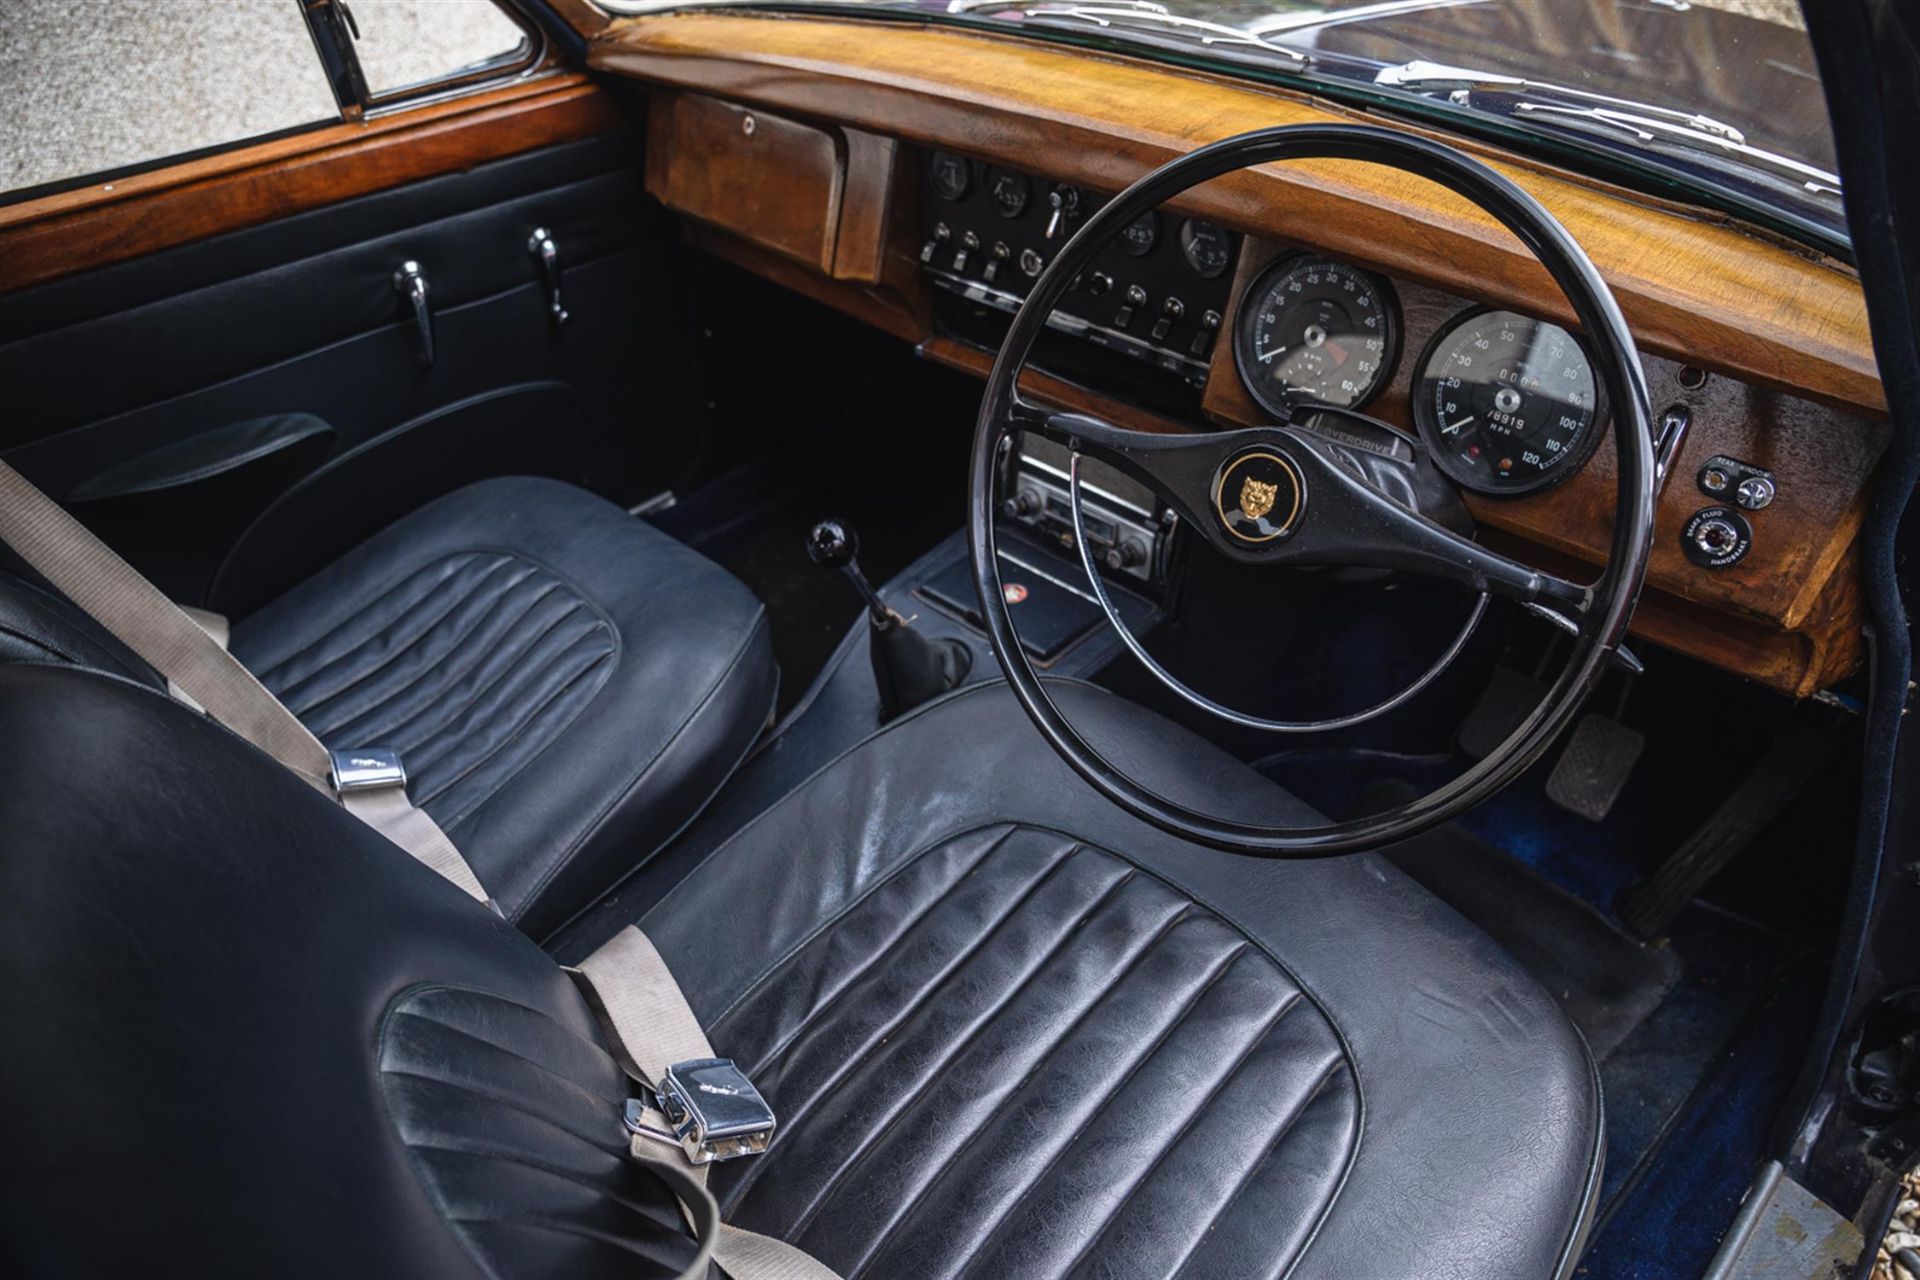 1967 Jaguar MK 2 2.4 Manual Overdrive - Image 2 of 10